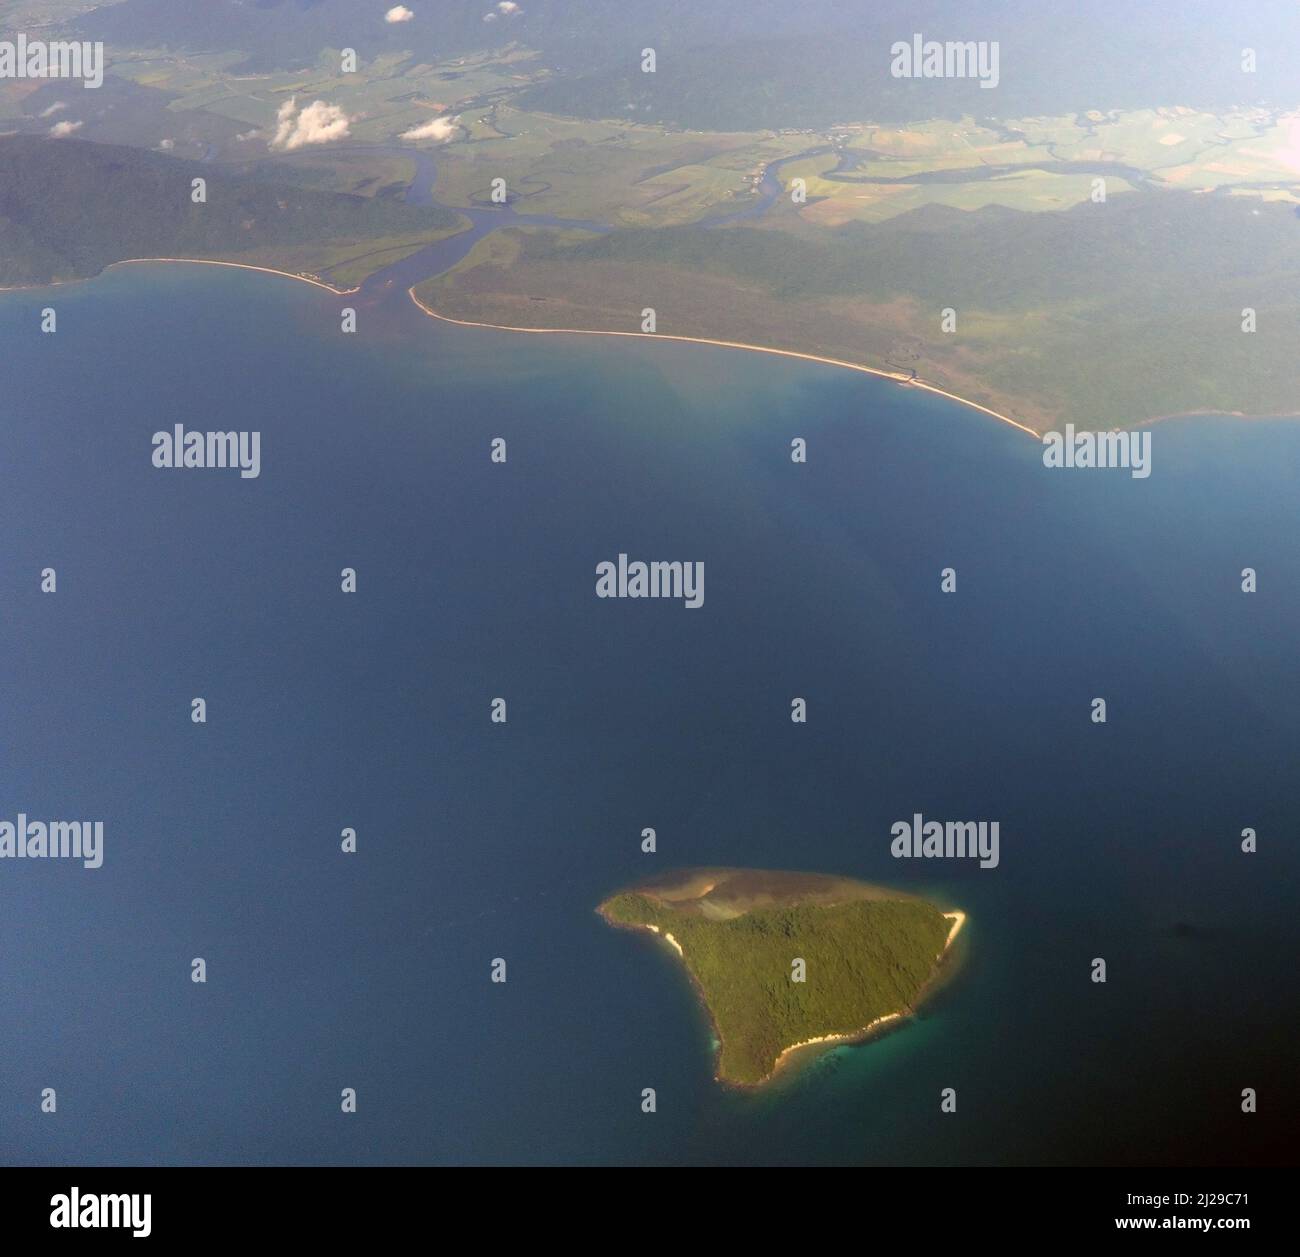 Vue aérienne de High Island, Frankland Islands Group, près de l'embouchure de la rivière Russell-Mulgrave, près de Cairns, Queensland, Australie Banque D'Images